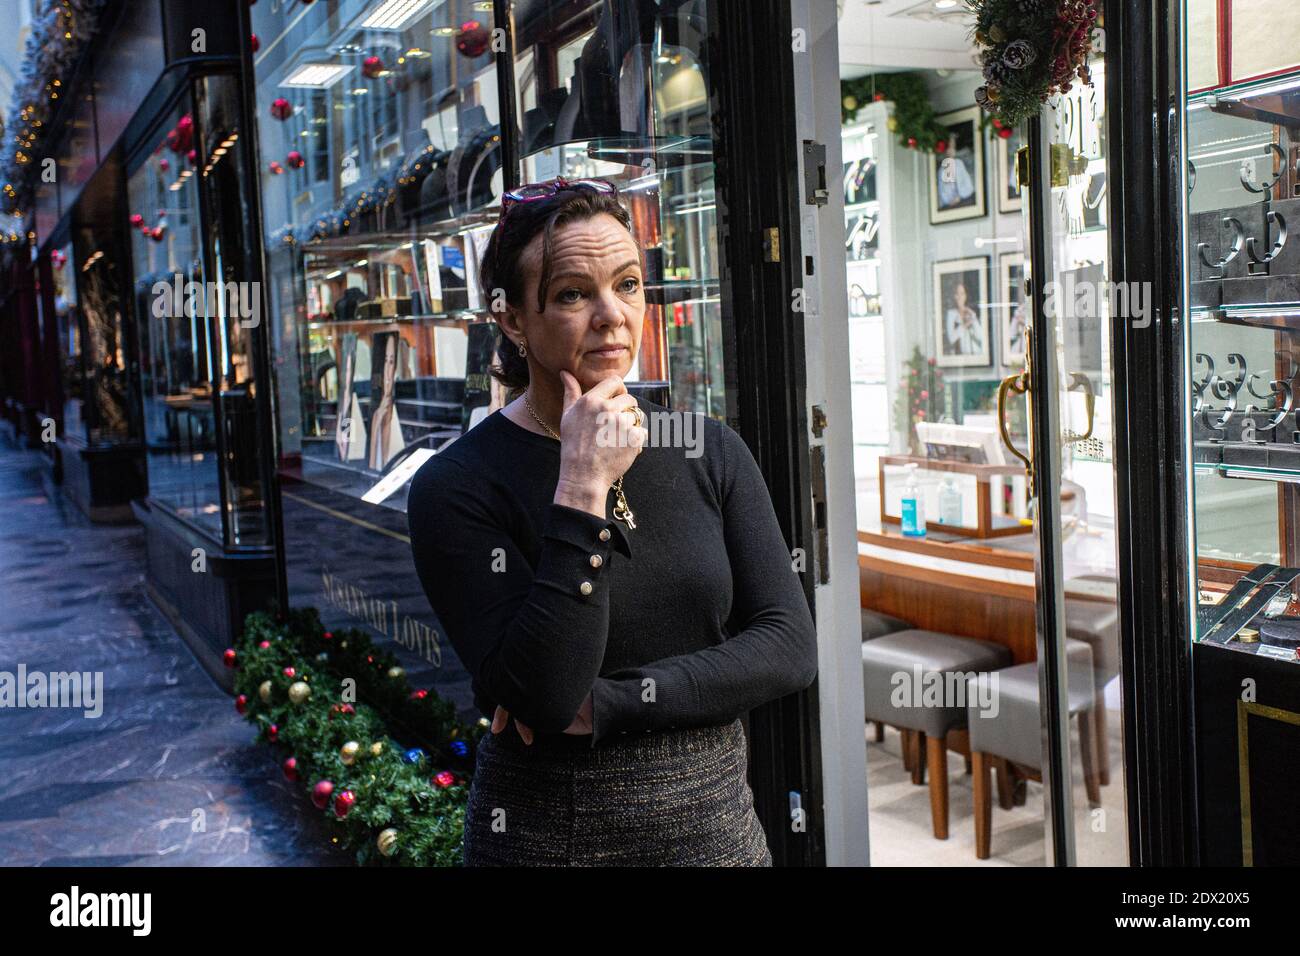 Gran Bretaña /Londres /Susannah Lovis Jewelers Burlington Arcade en Londres el 23 de diciembre de 2020. Foto de stock